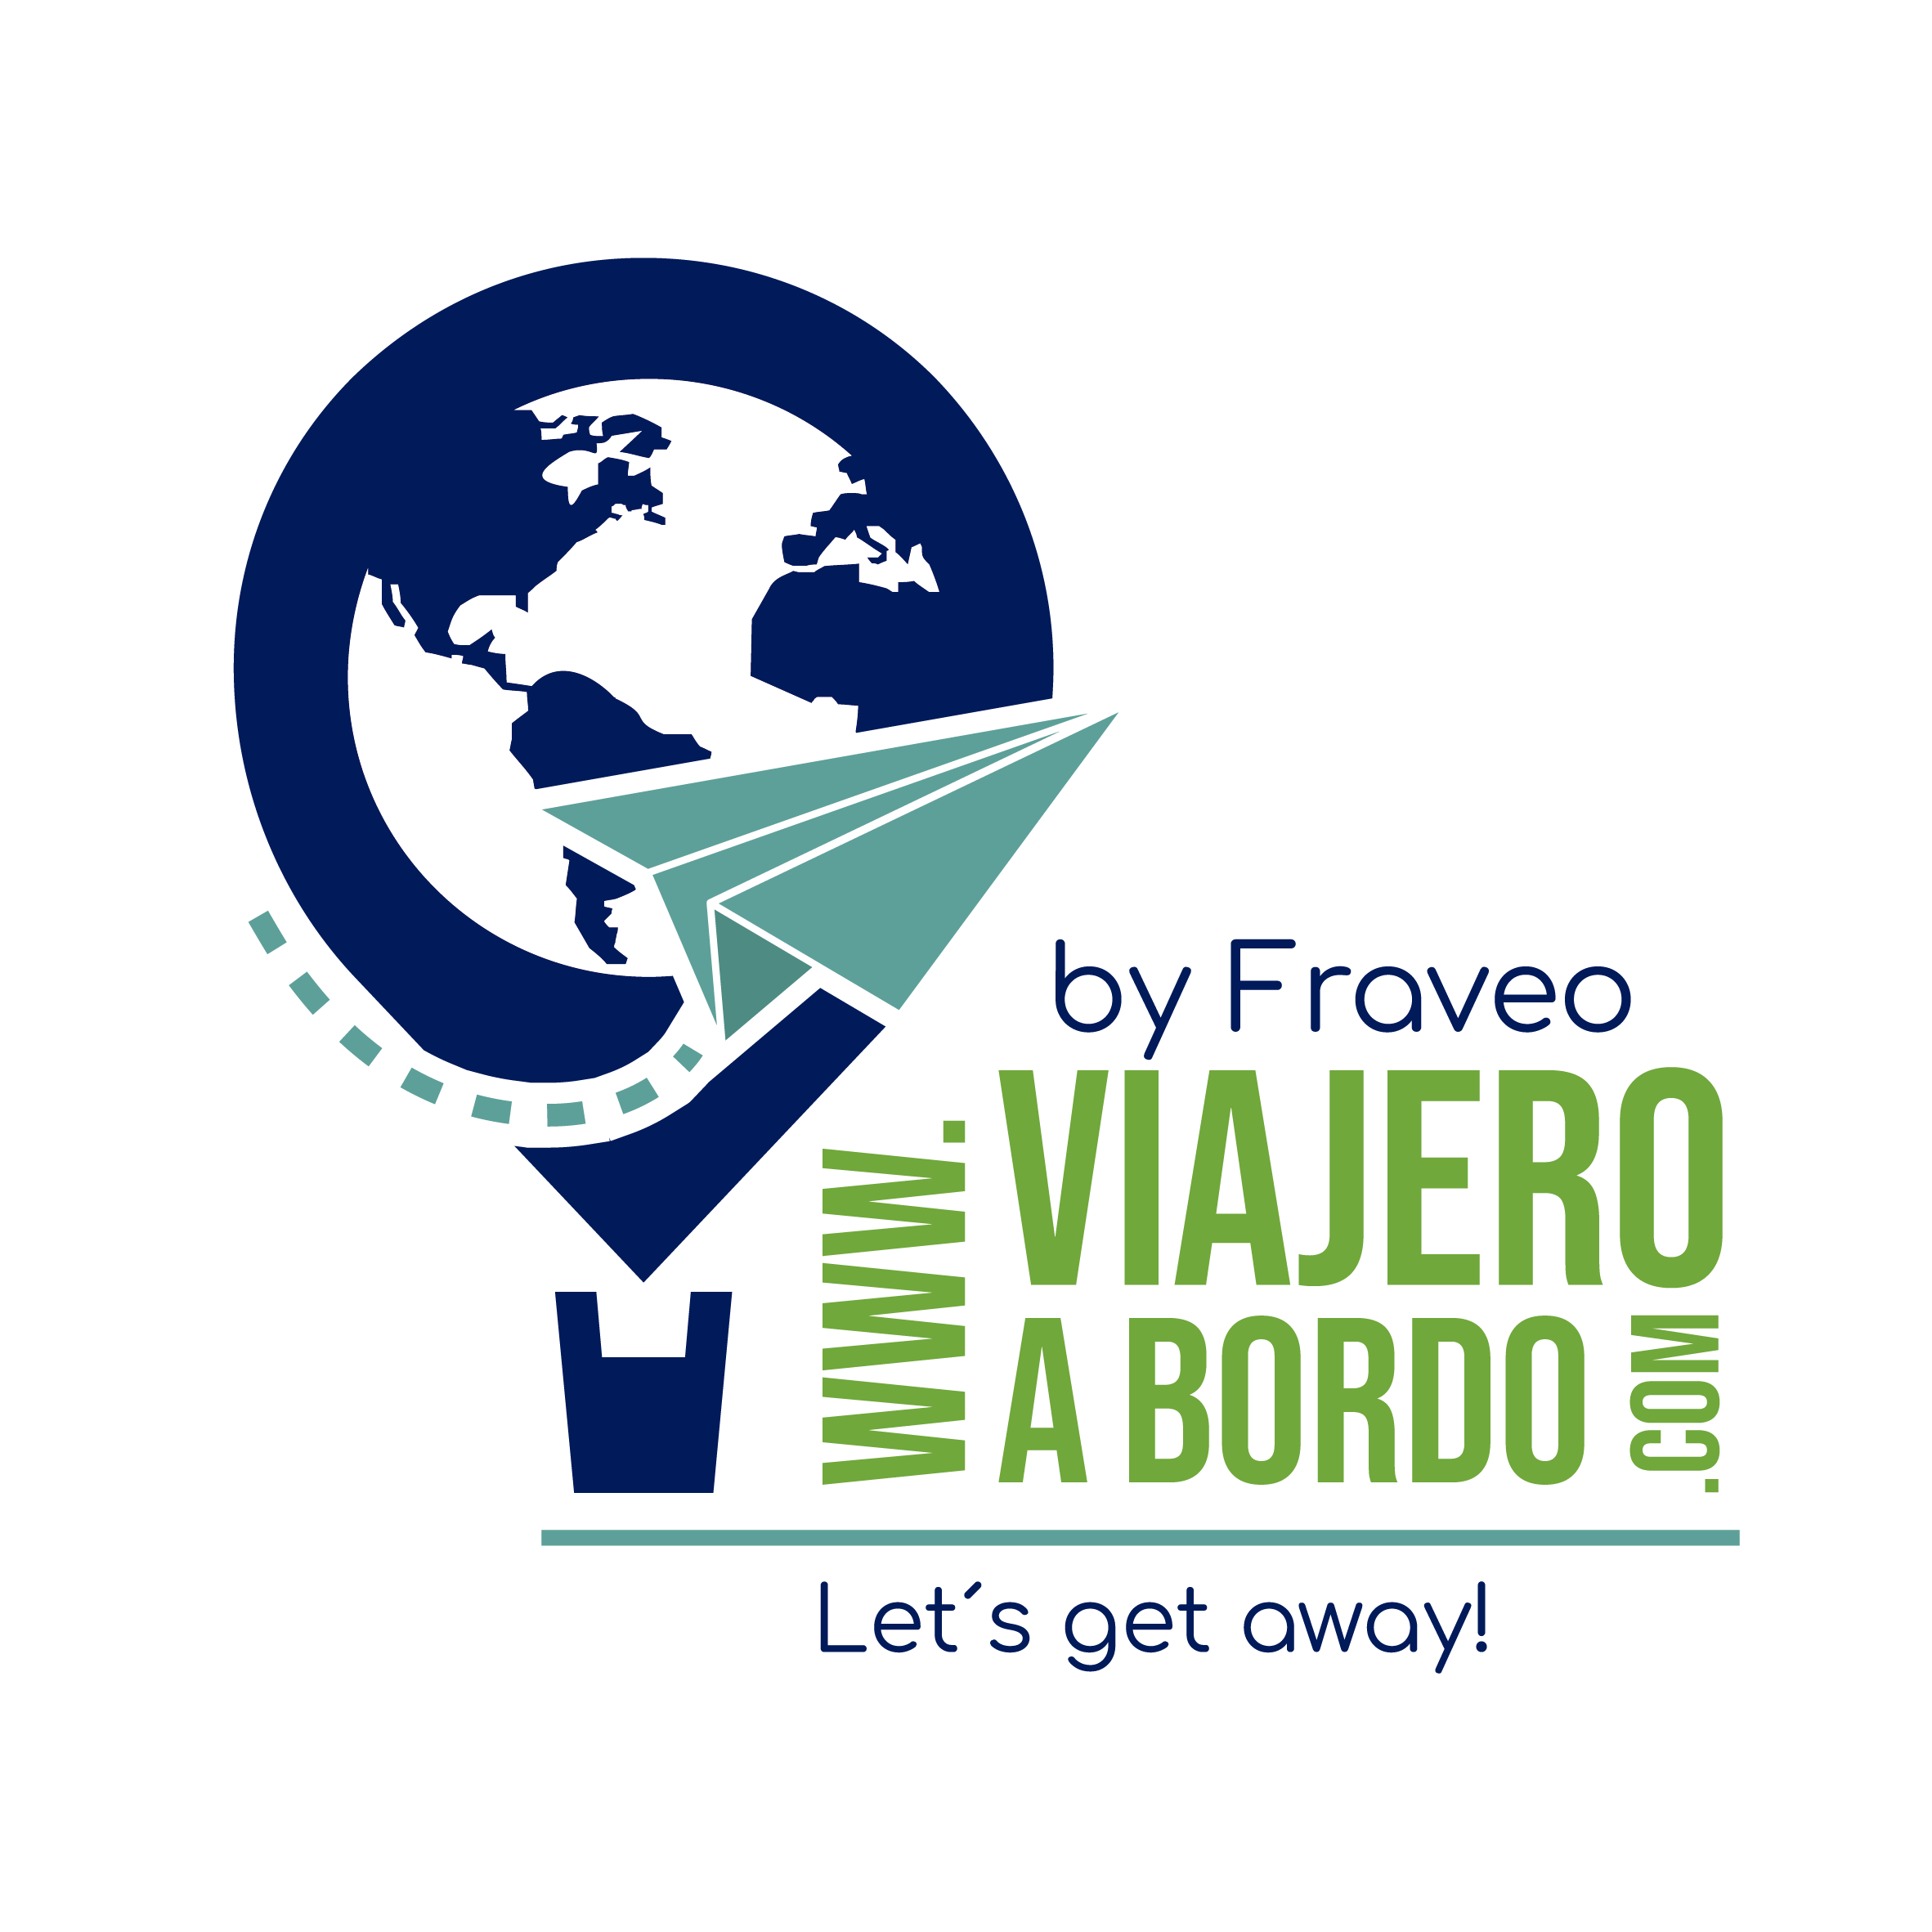 www.viajeroabordo.com BY FRAVEO 